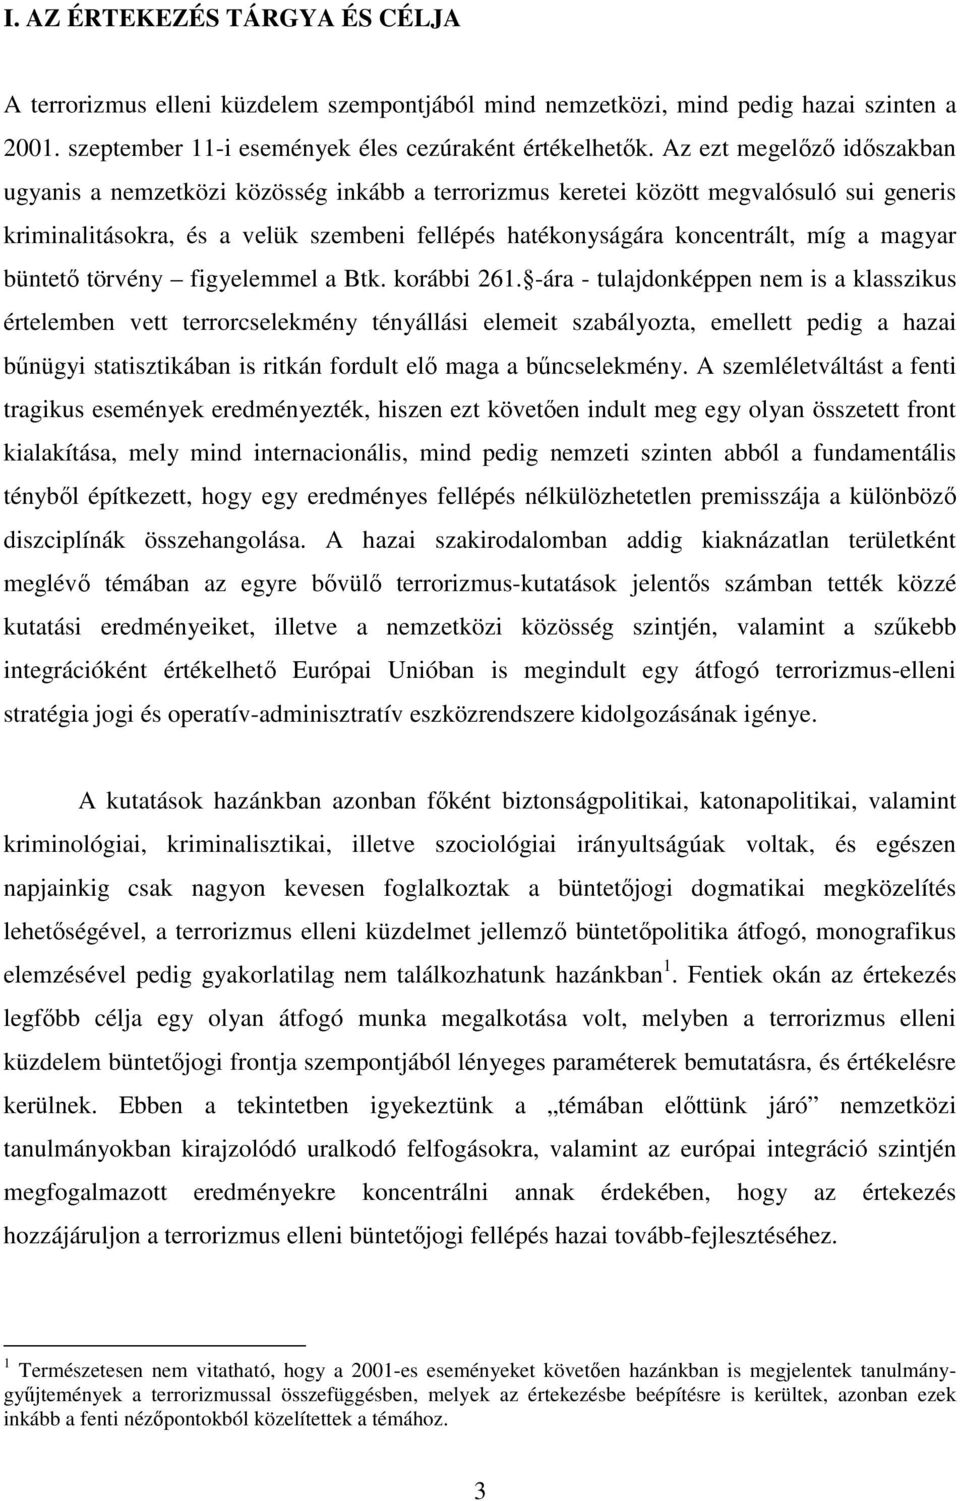 magyar büntetı törvény figyelemmel a Btk. korábbi 261.